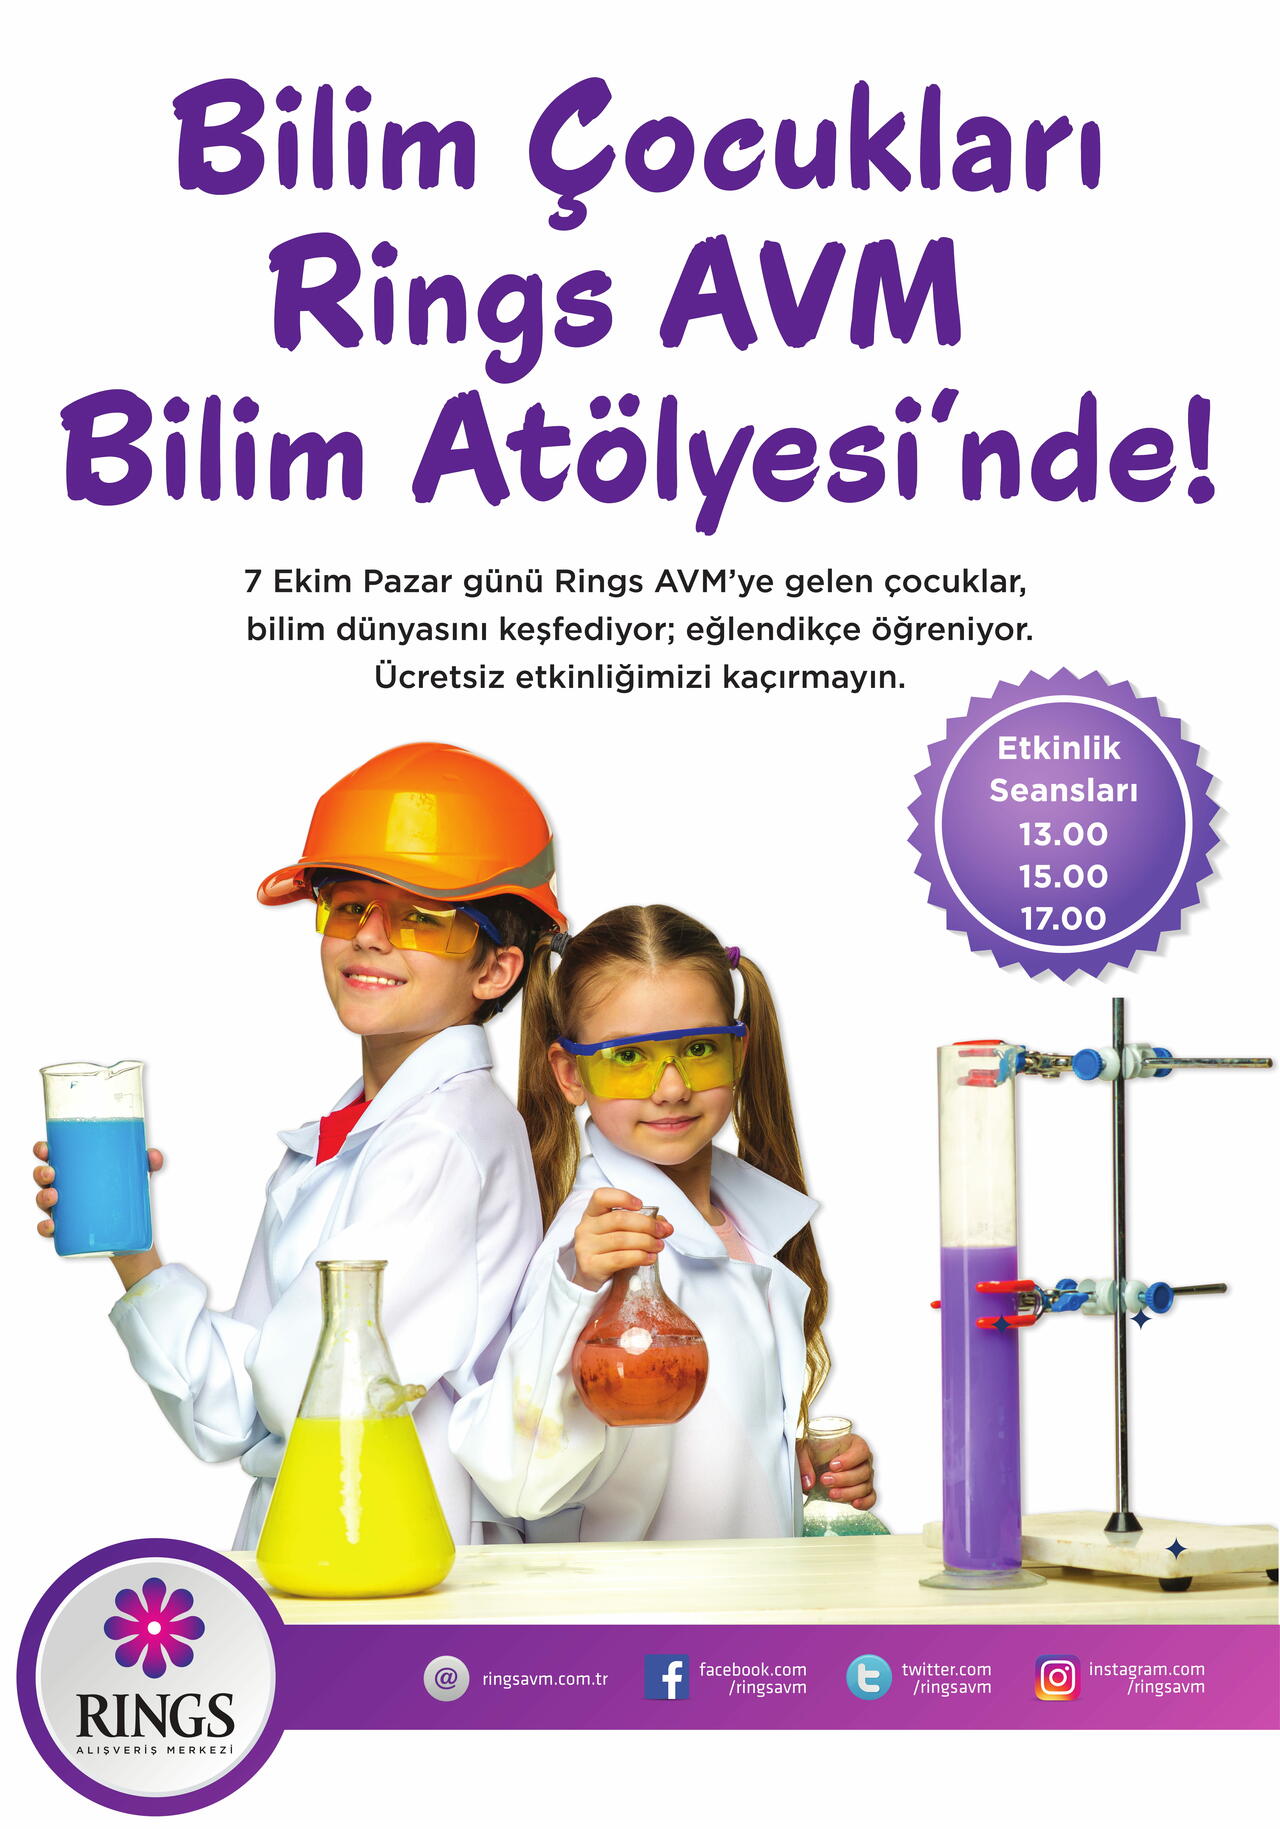 Bilim Çocukları Rings AVM Bilim Atölyesi'nde!